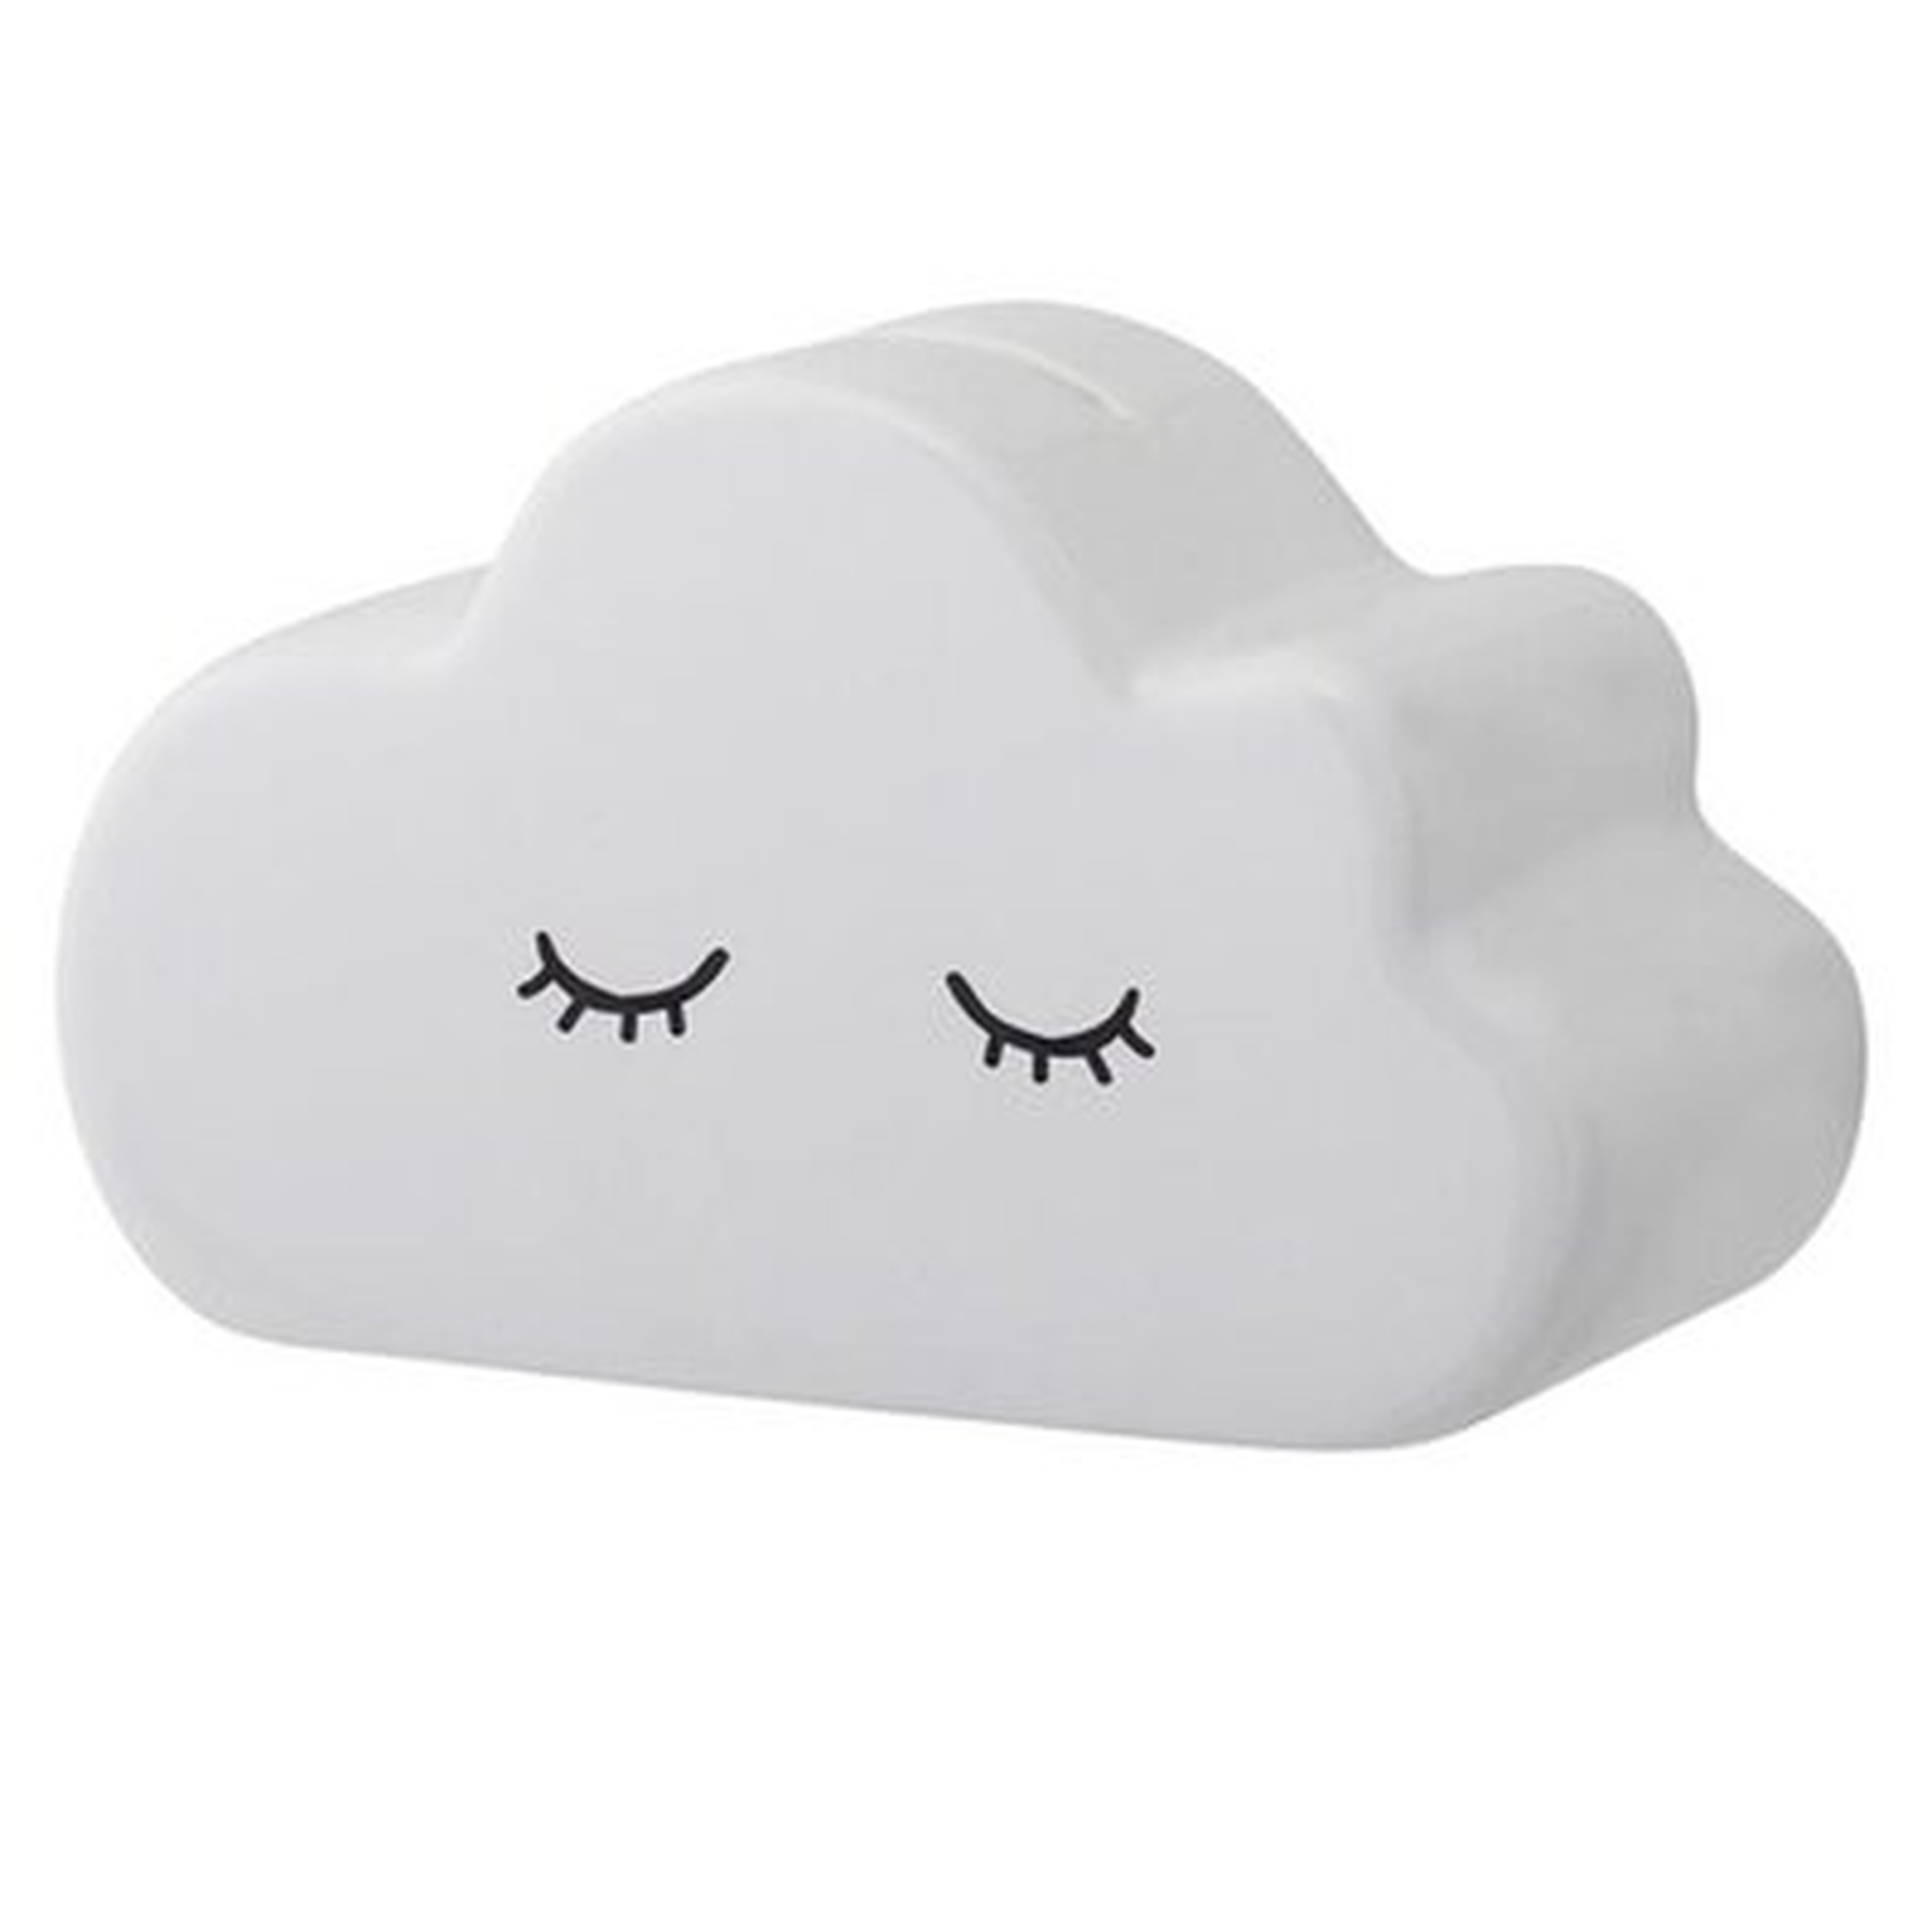 Suher Cloud Ceramic Piggy Bank - Wayfair